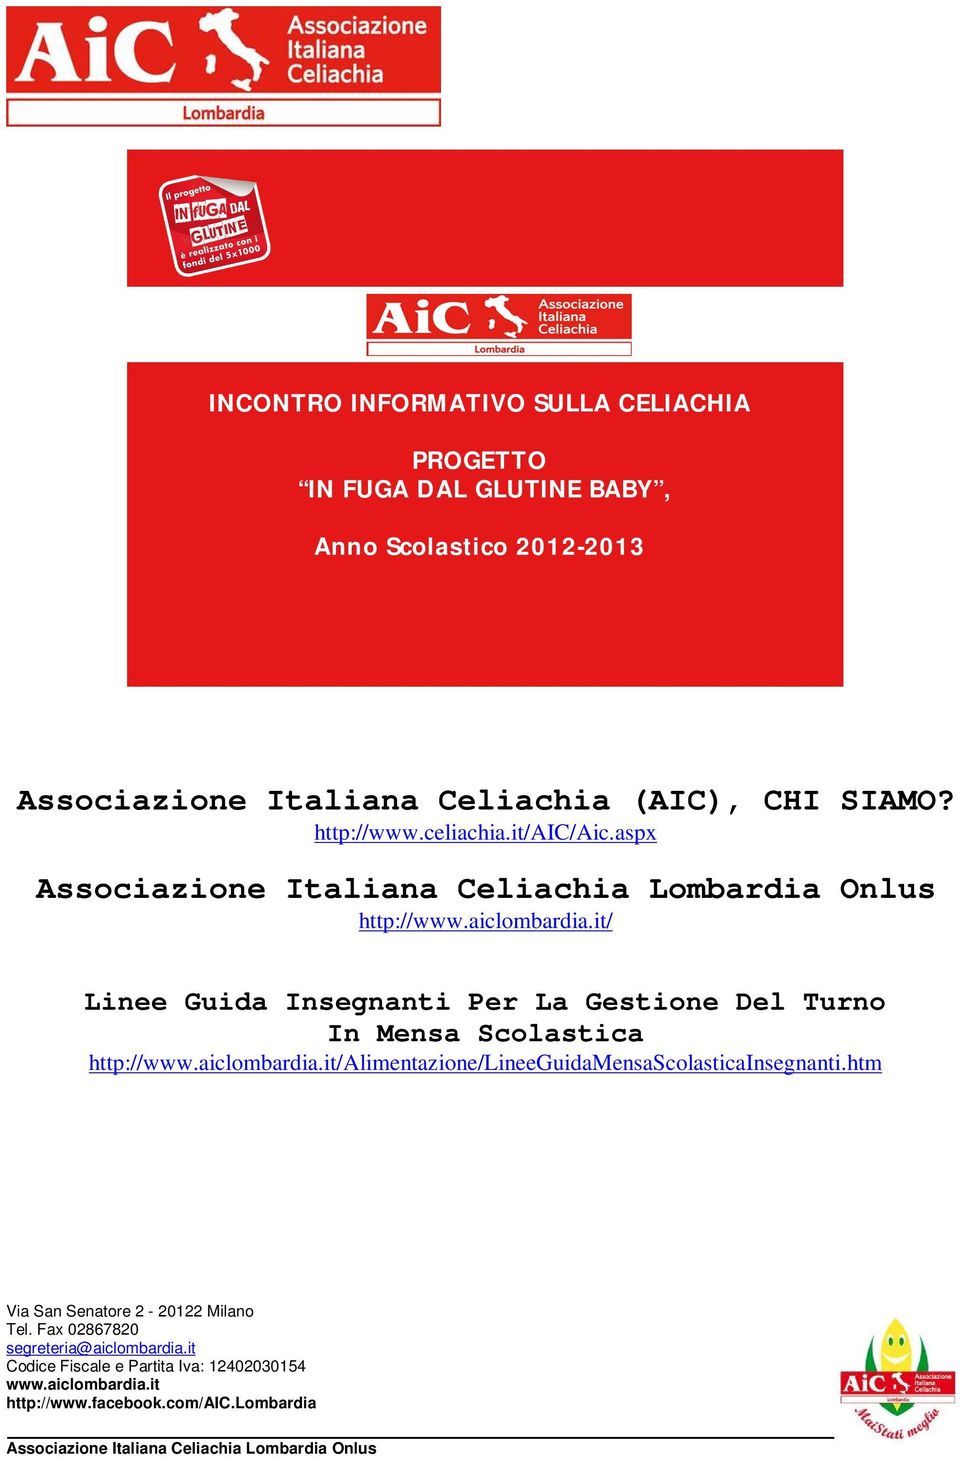 http://www.celiachia.it/aic/aic.